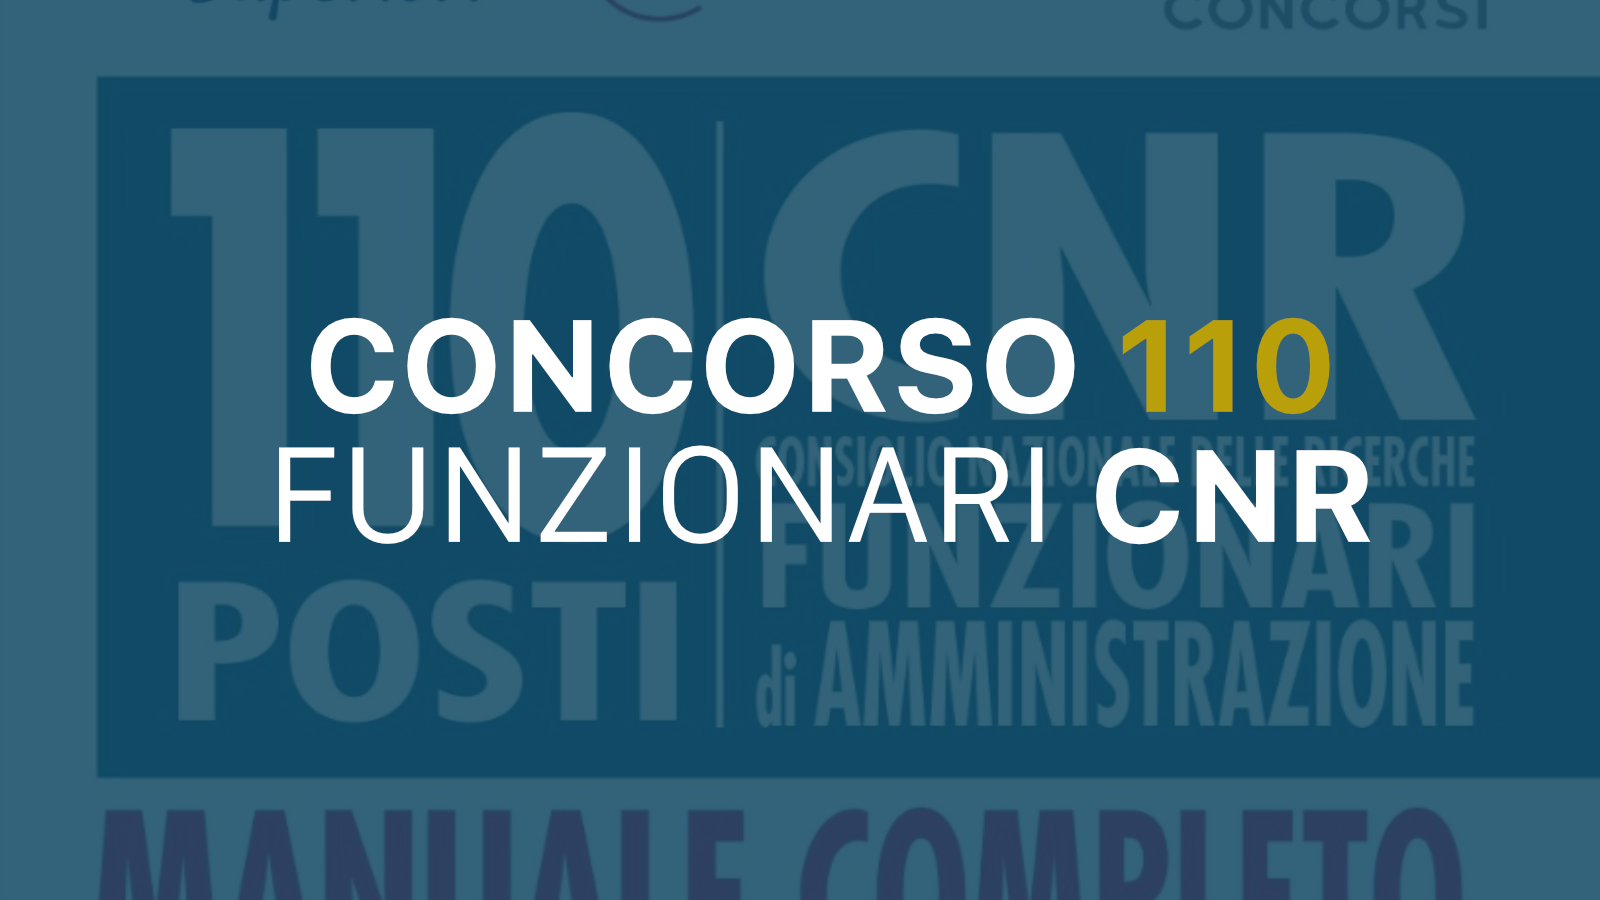 110 funzionari amministrativi - concorso alle sedi C.N.R. Posti in tutta Italia